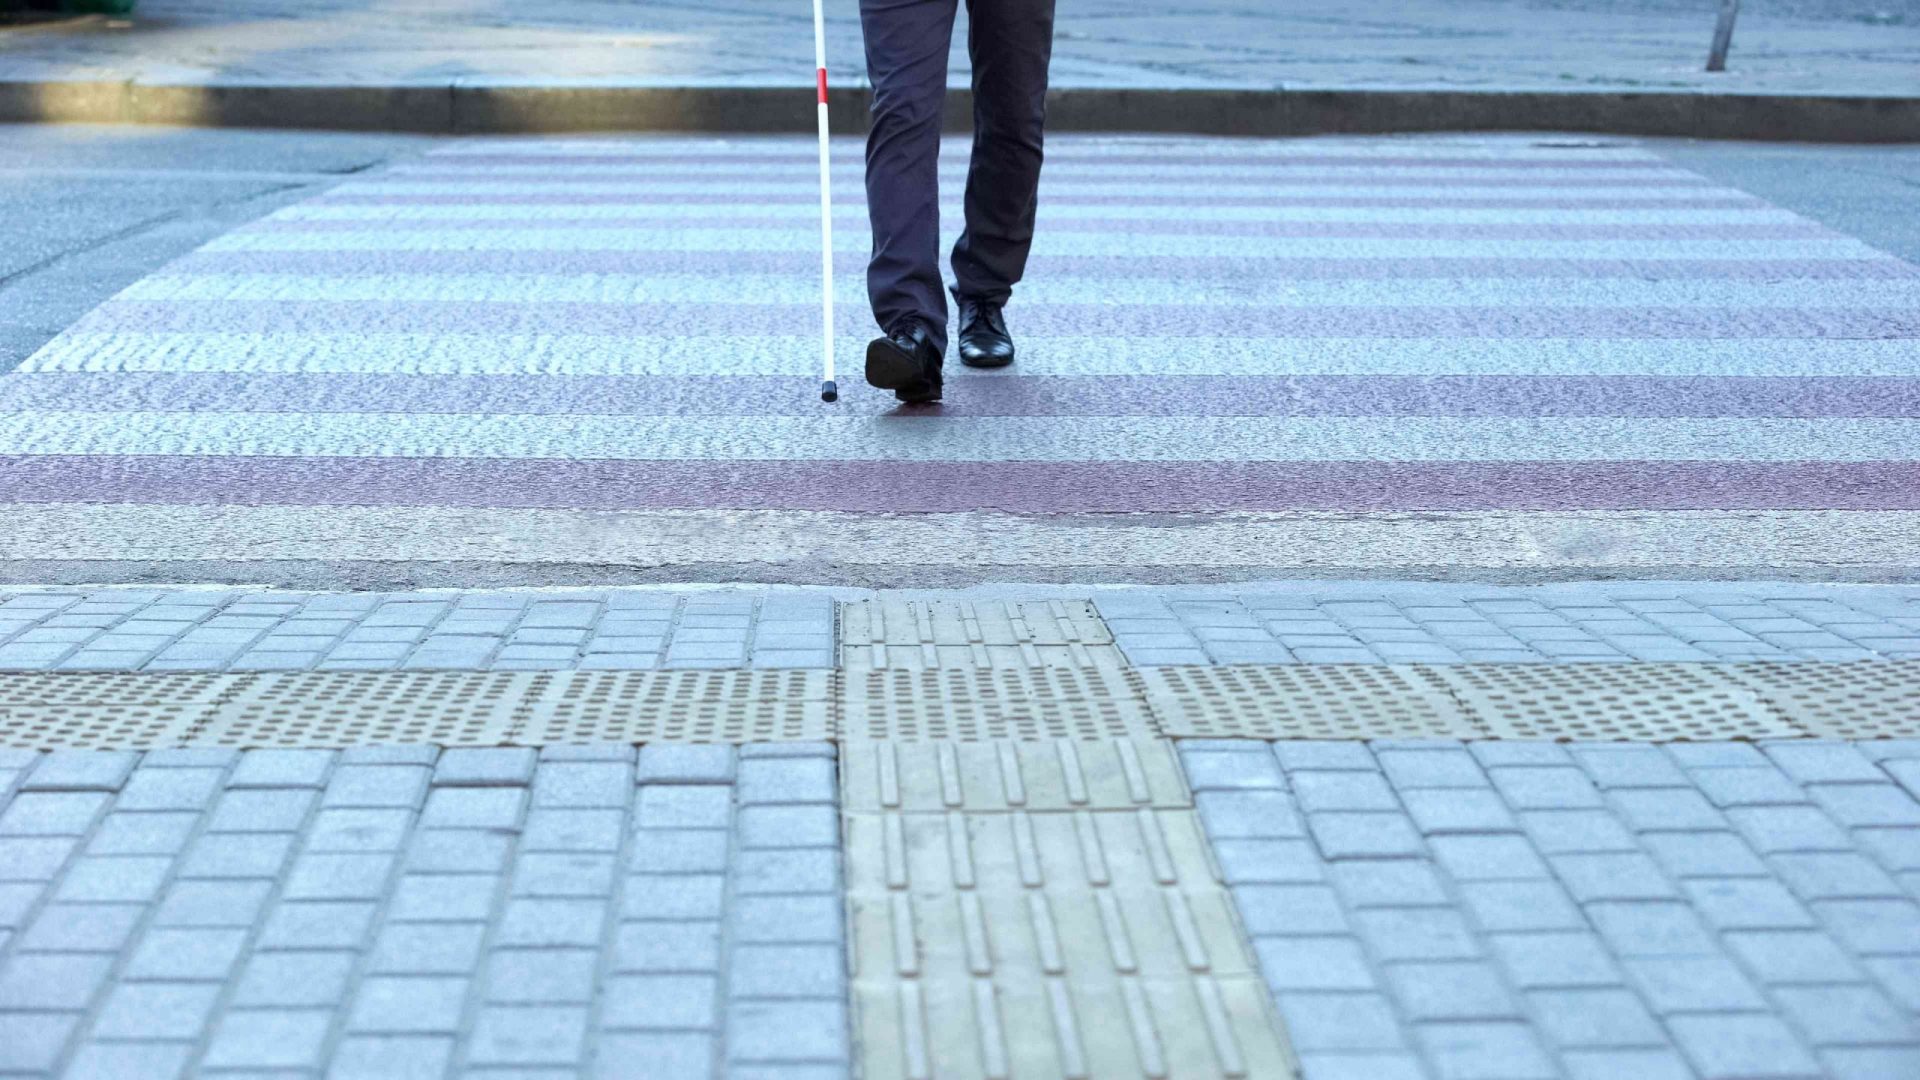 Persona con discapacidad visual cruzando una calle